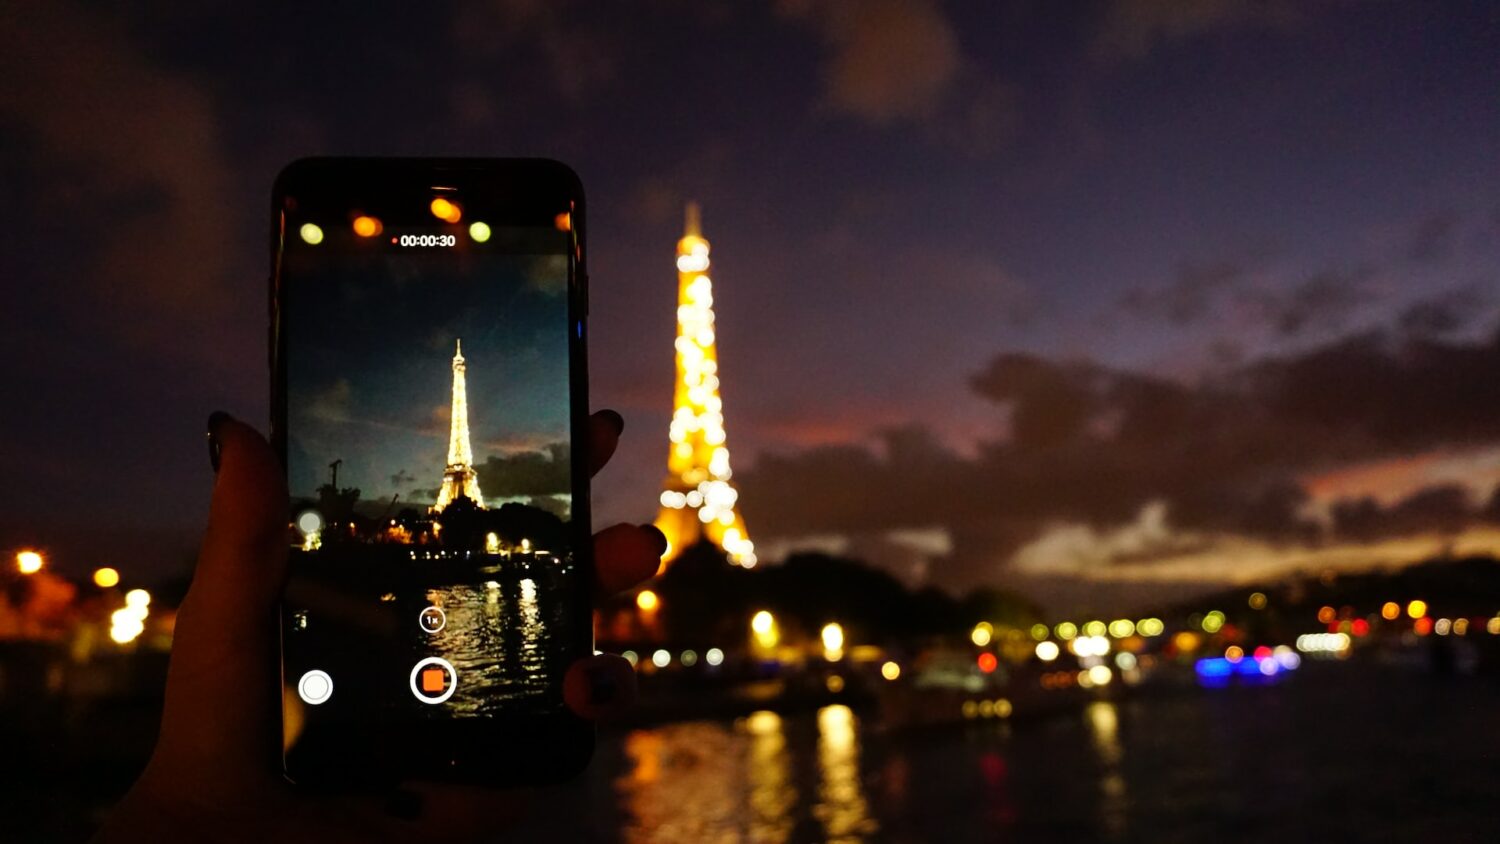 Uma torre alta e iluminada por luzes amarelas, na frente da construção há um rio, e do outro lado deste rio há uma pessoa segurando um celular enquanto fotografa a atração turística, para representar chip celular Paris